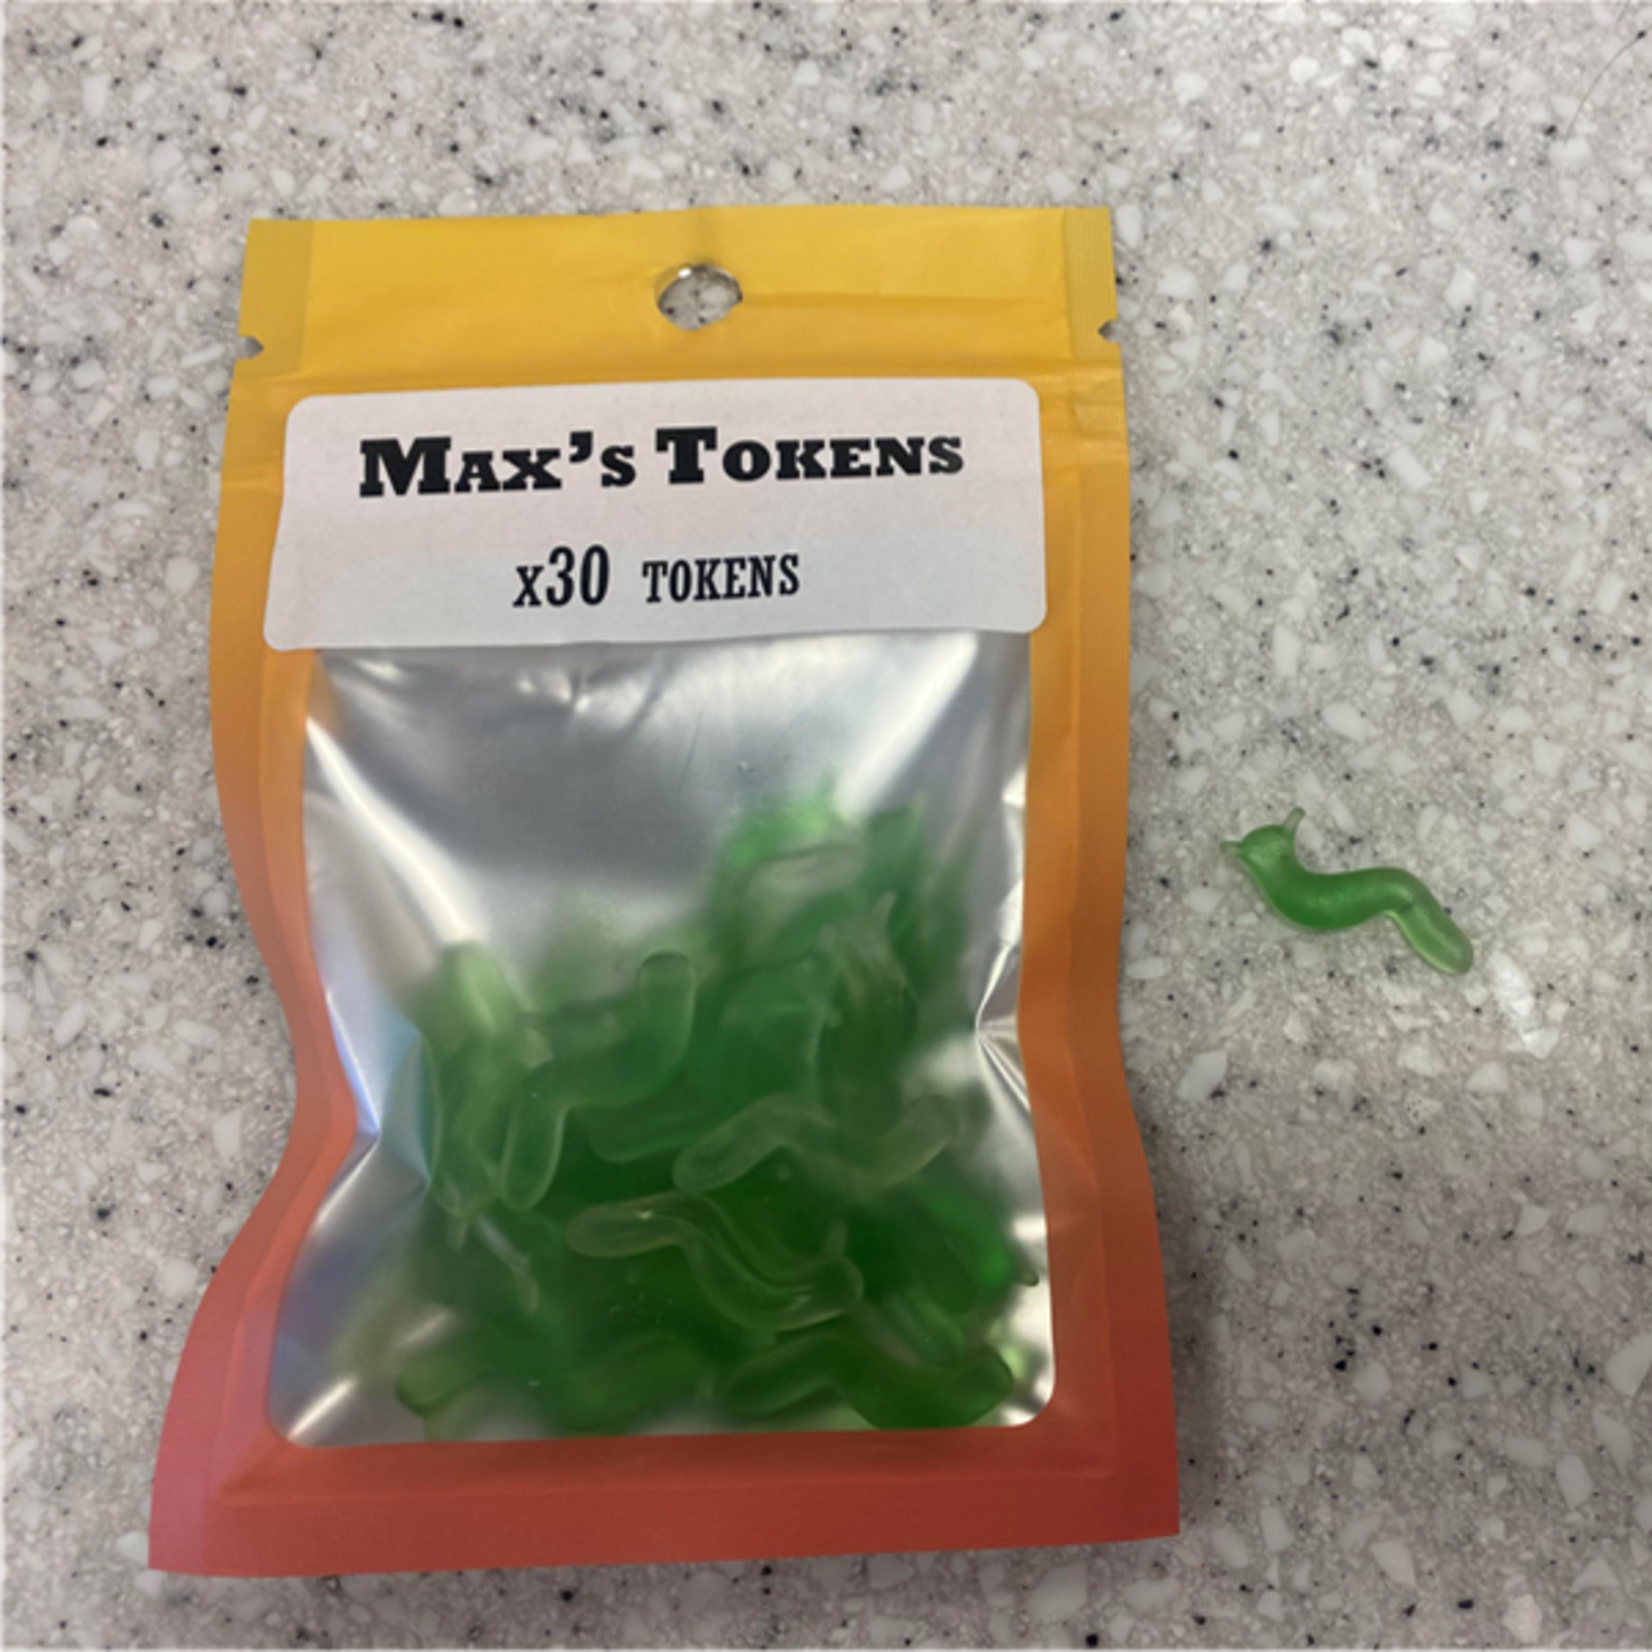 Max's Tokens Max's Tokens - Green Slugs